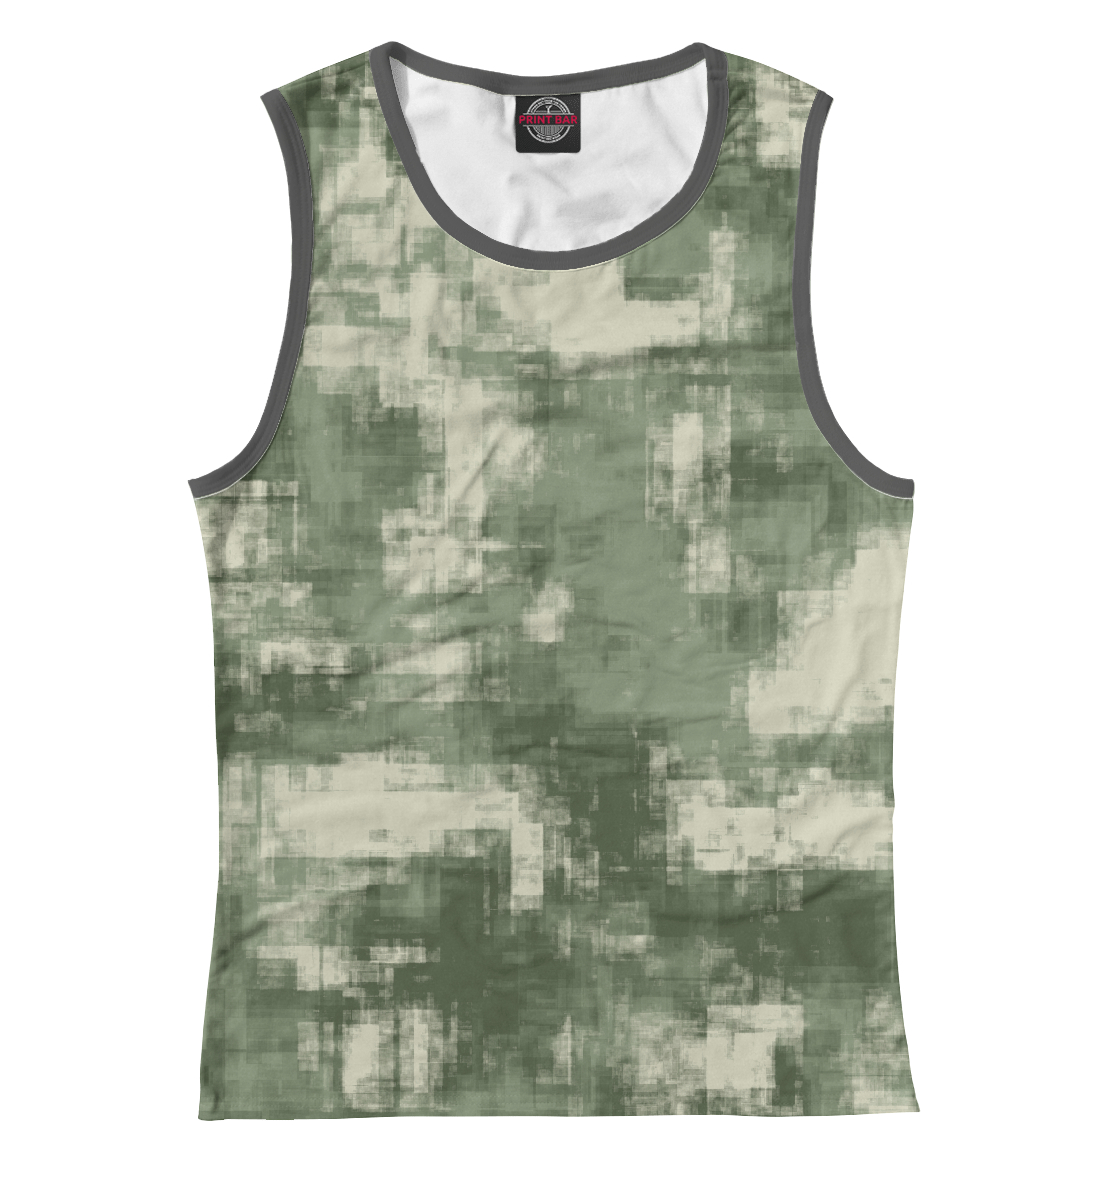 Женская Майка Военный камуфляж- одежда для мужчин и женщин, артикул CMF-442561-may-1mp